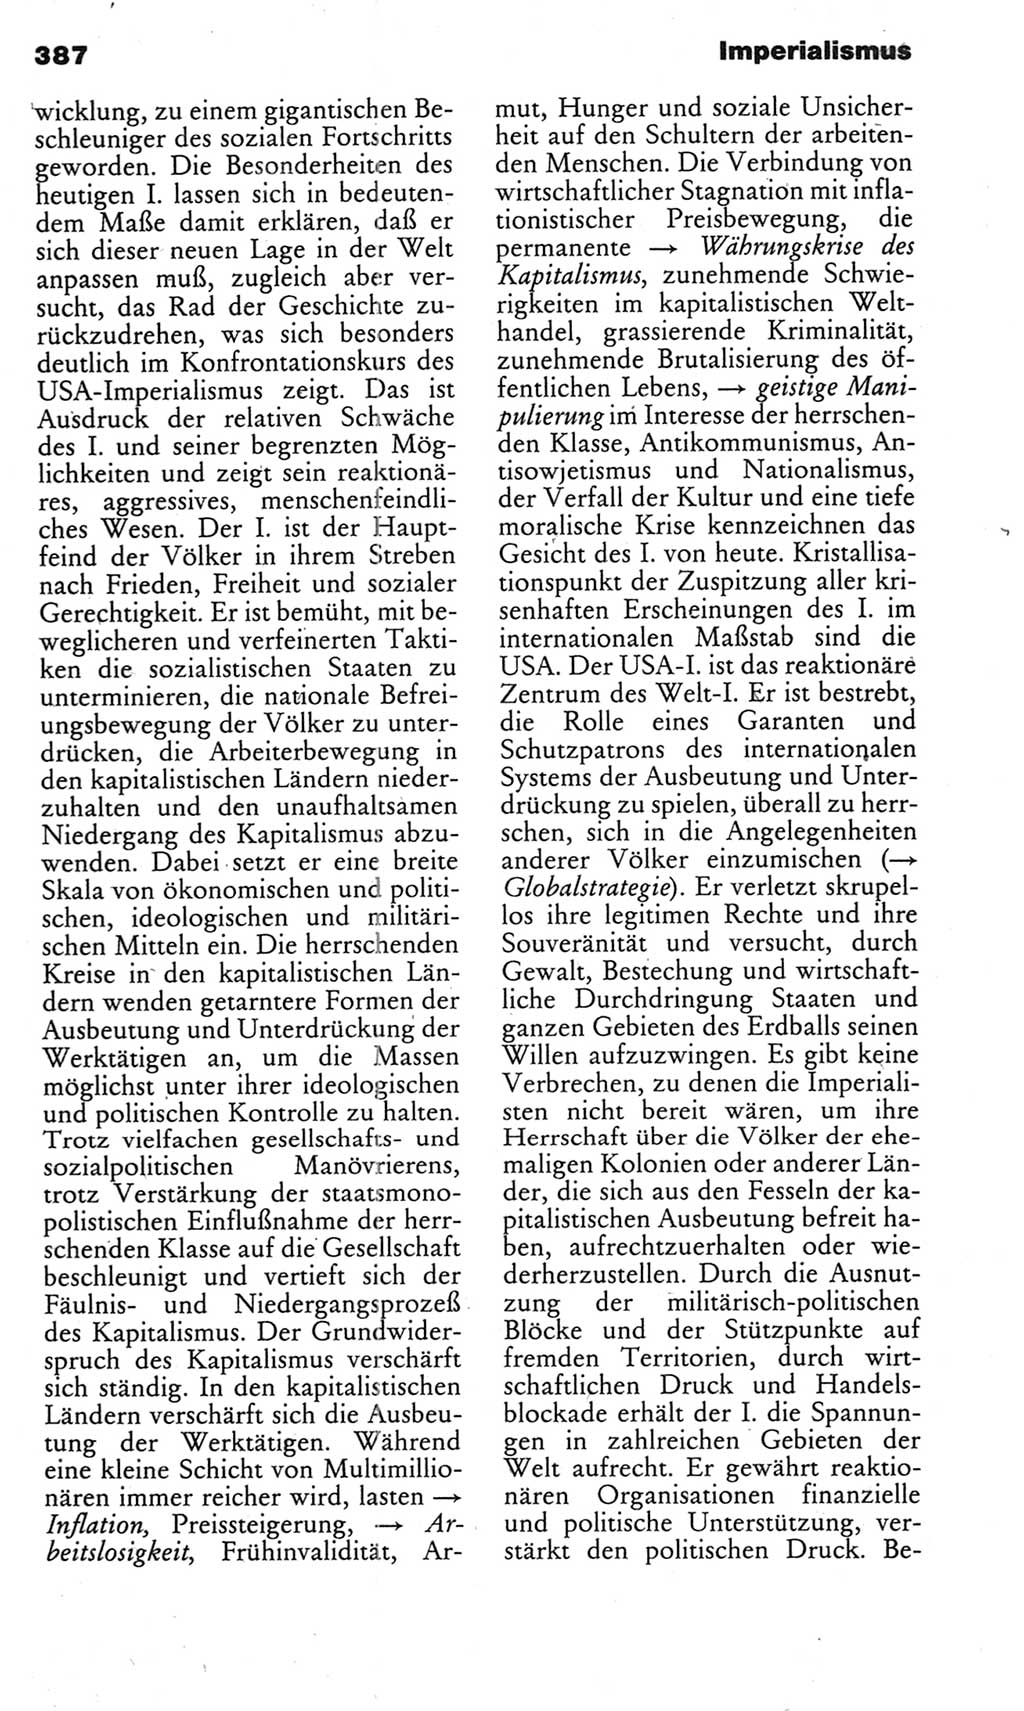 Kleines politisches Wörterbuch [Deutsche Demokratische Republik (DDR)] 1983, Seite 387 (Kl. pol. Wb. DDR 1983, S. 387)